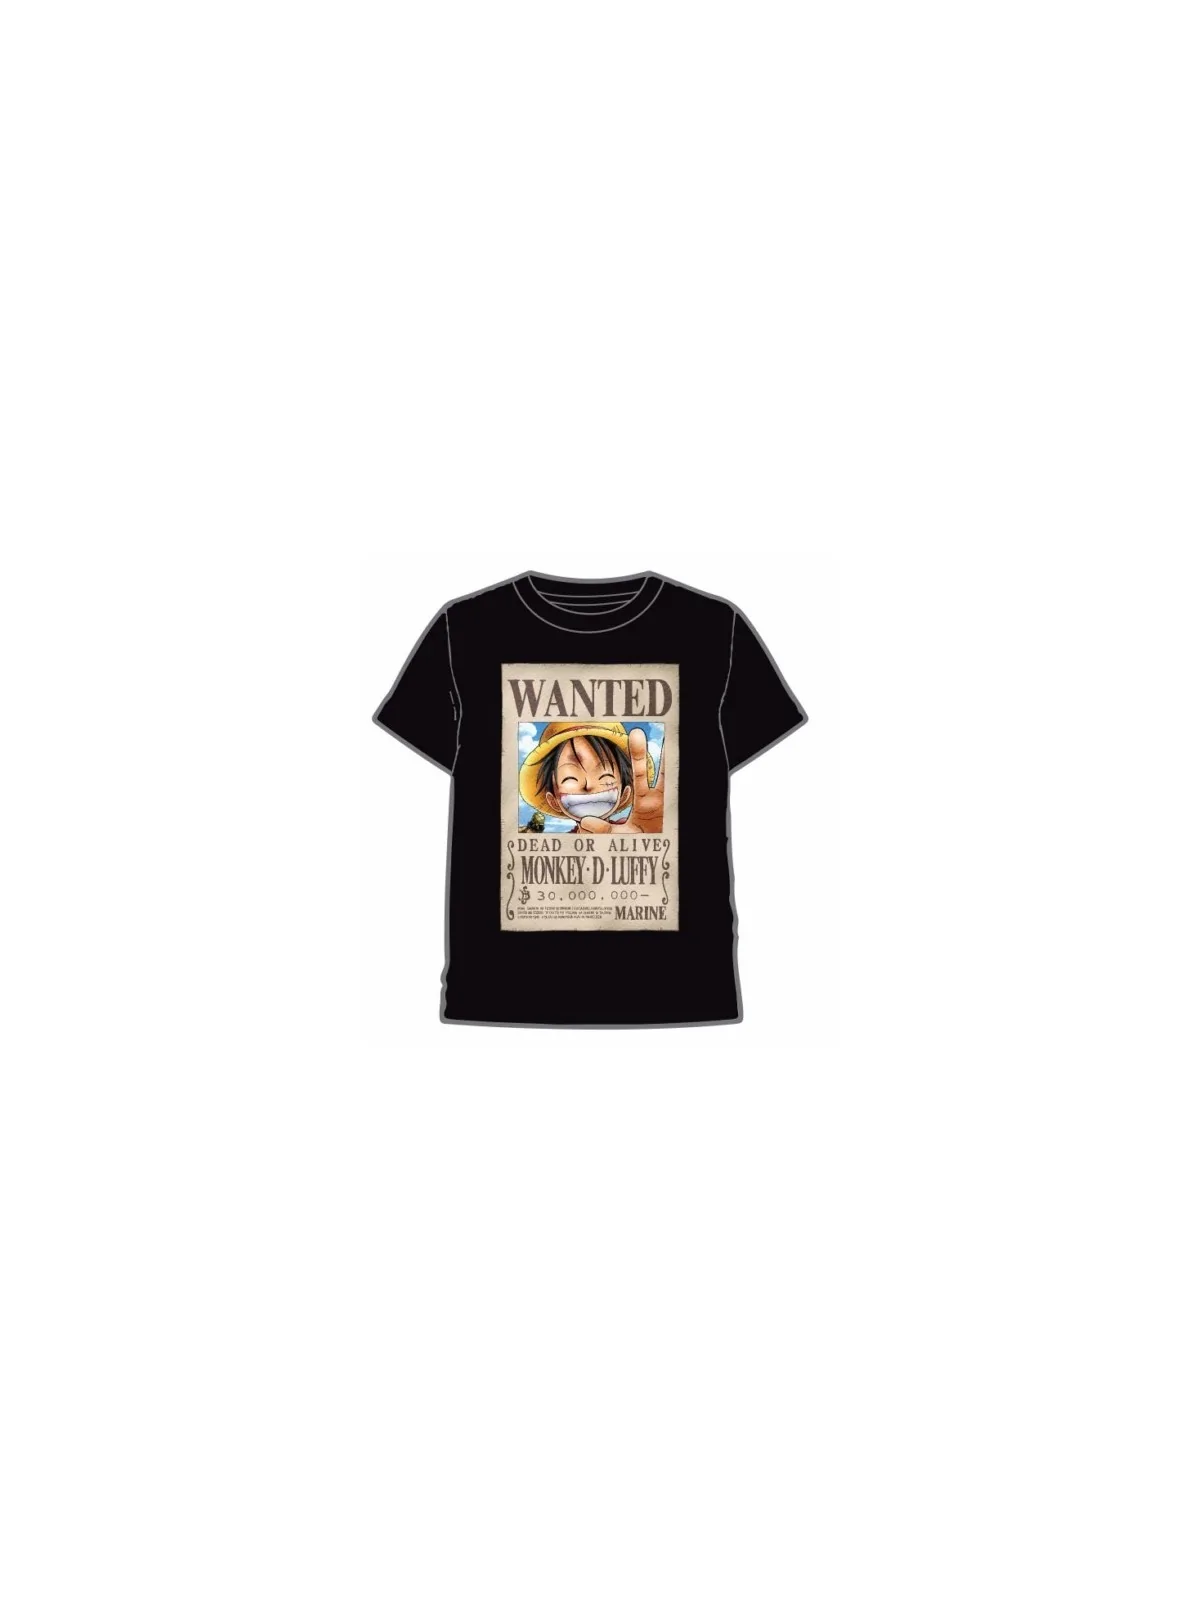 Comprar Camiseta One Piece Wanted barato al mejor precio 19,99 € de La